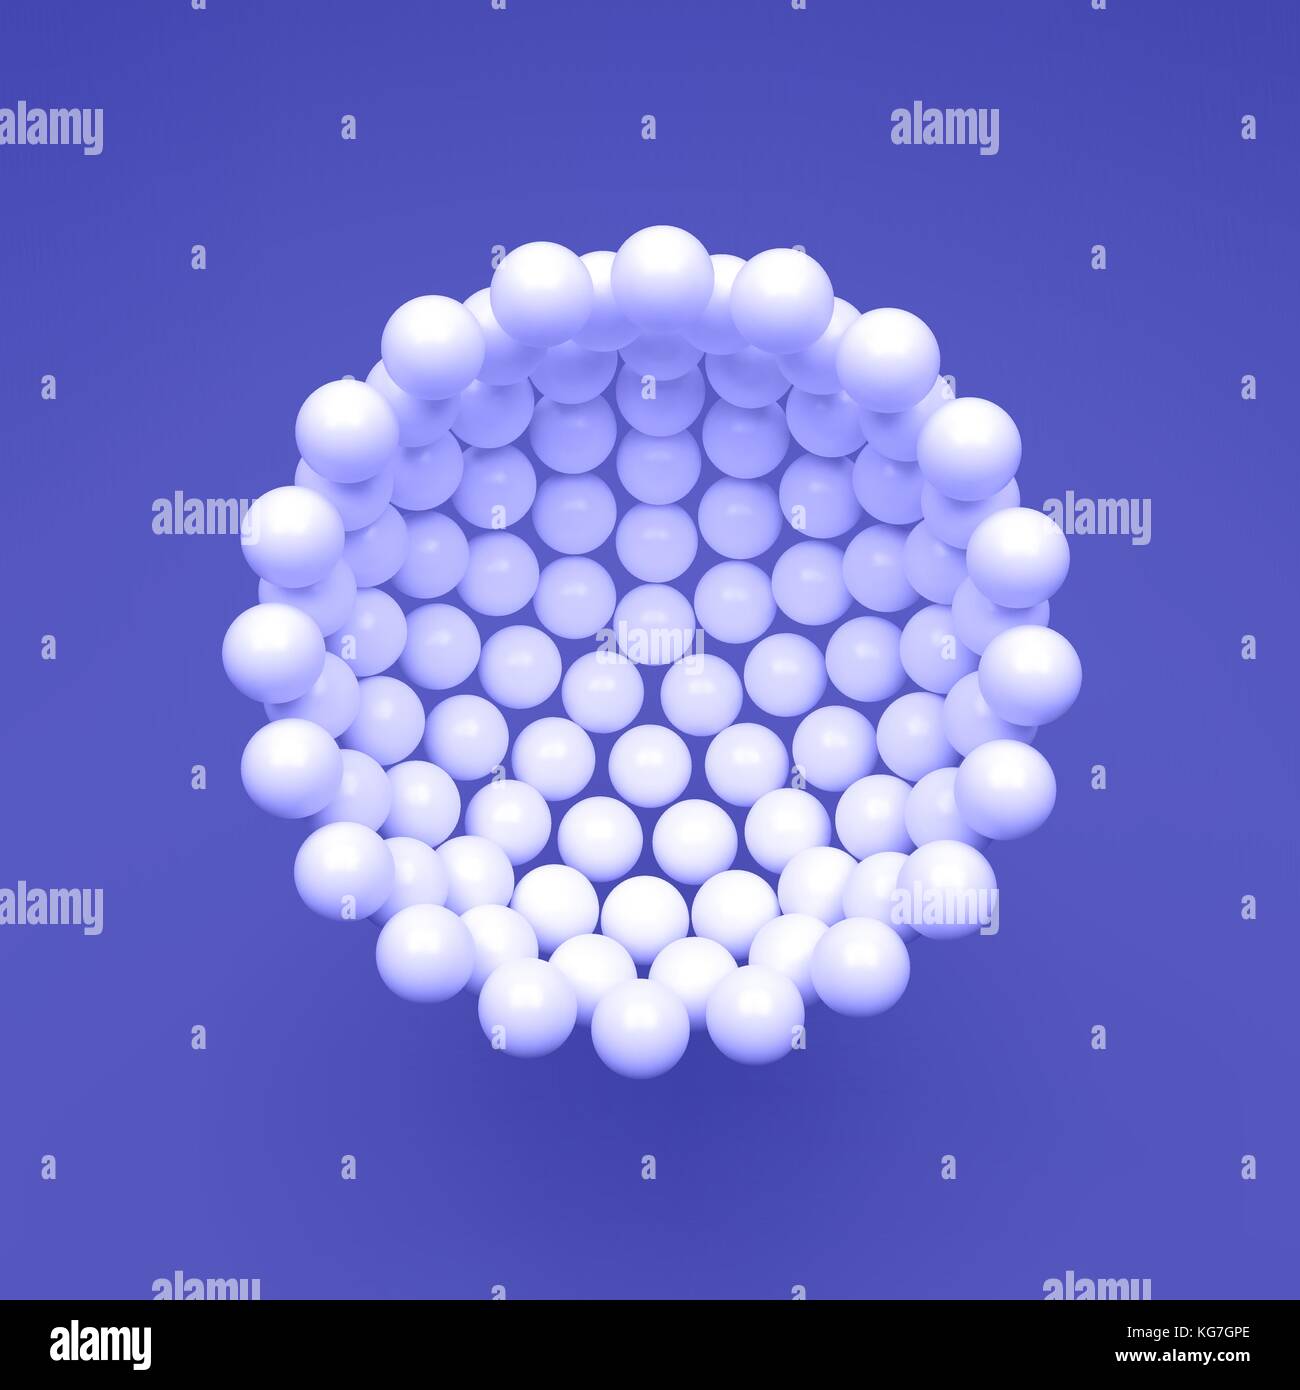 Molekulare Struktur mit sphärischen Partikeln. wissenschaftlichen Hintergrund. Verbindung Struktur. 3D-Vektor Illustration für Design. Stock Vektor